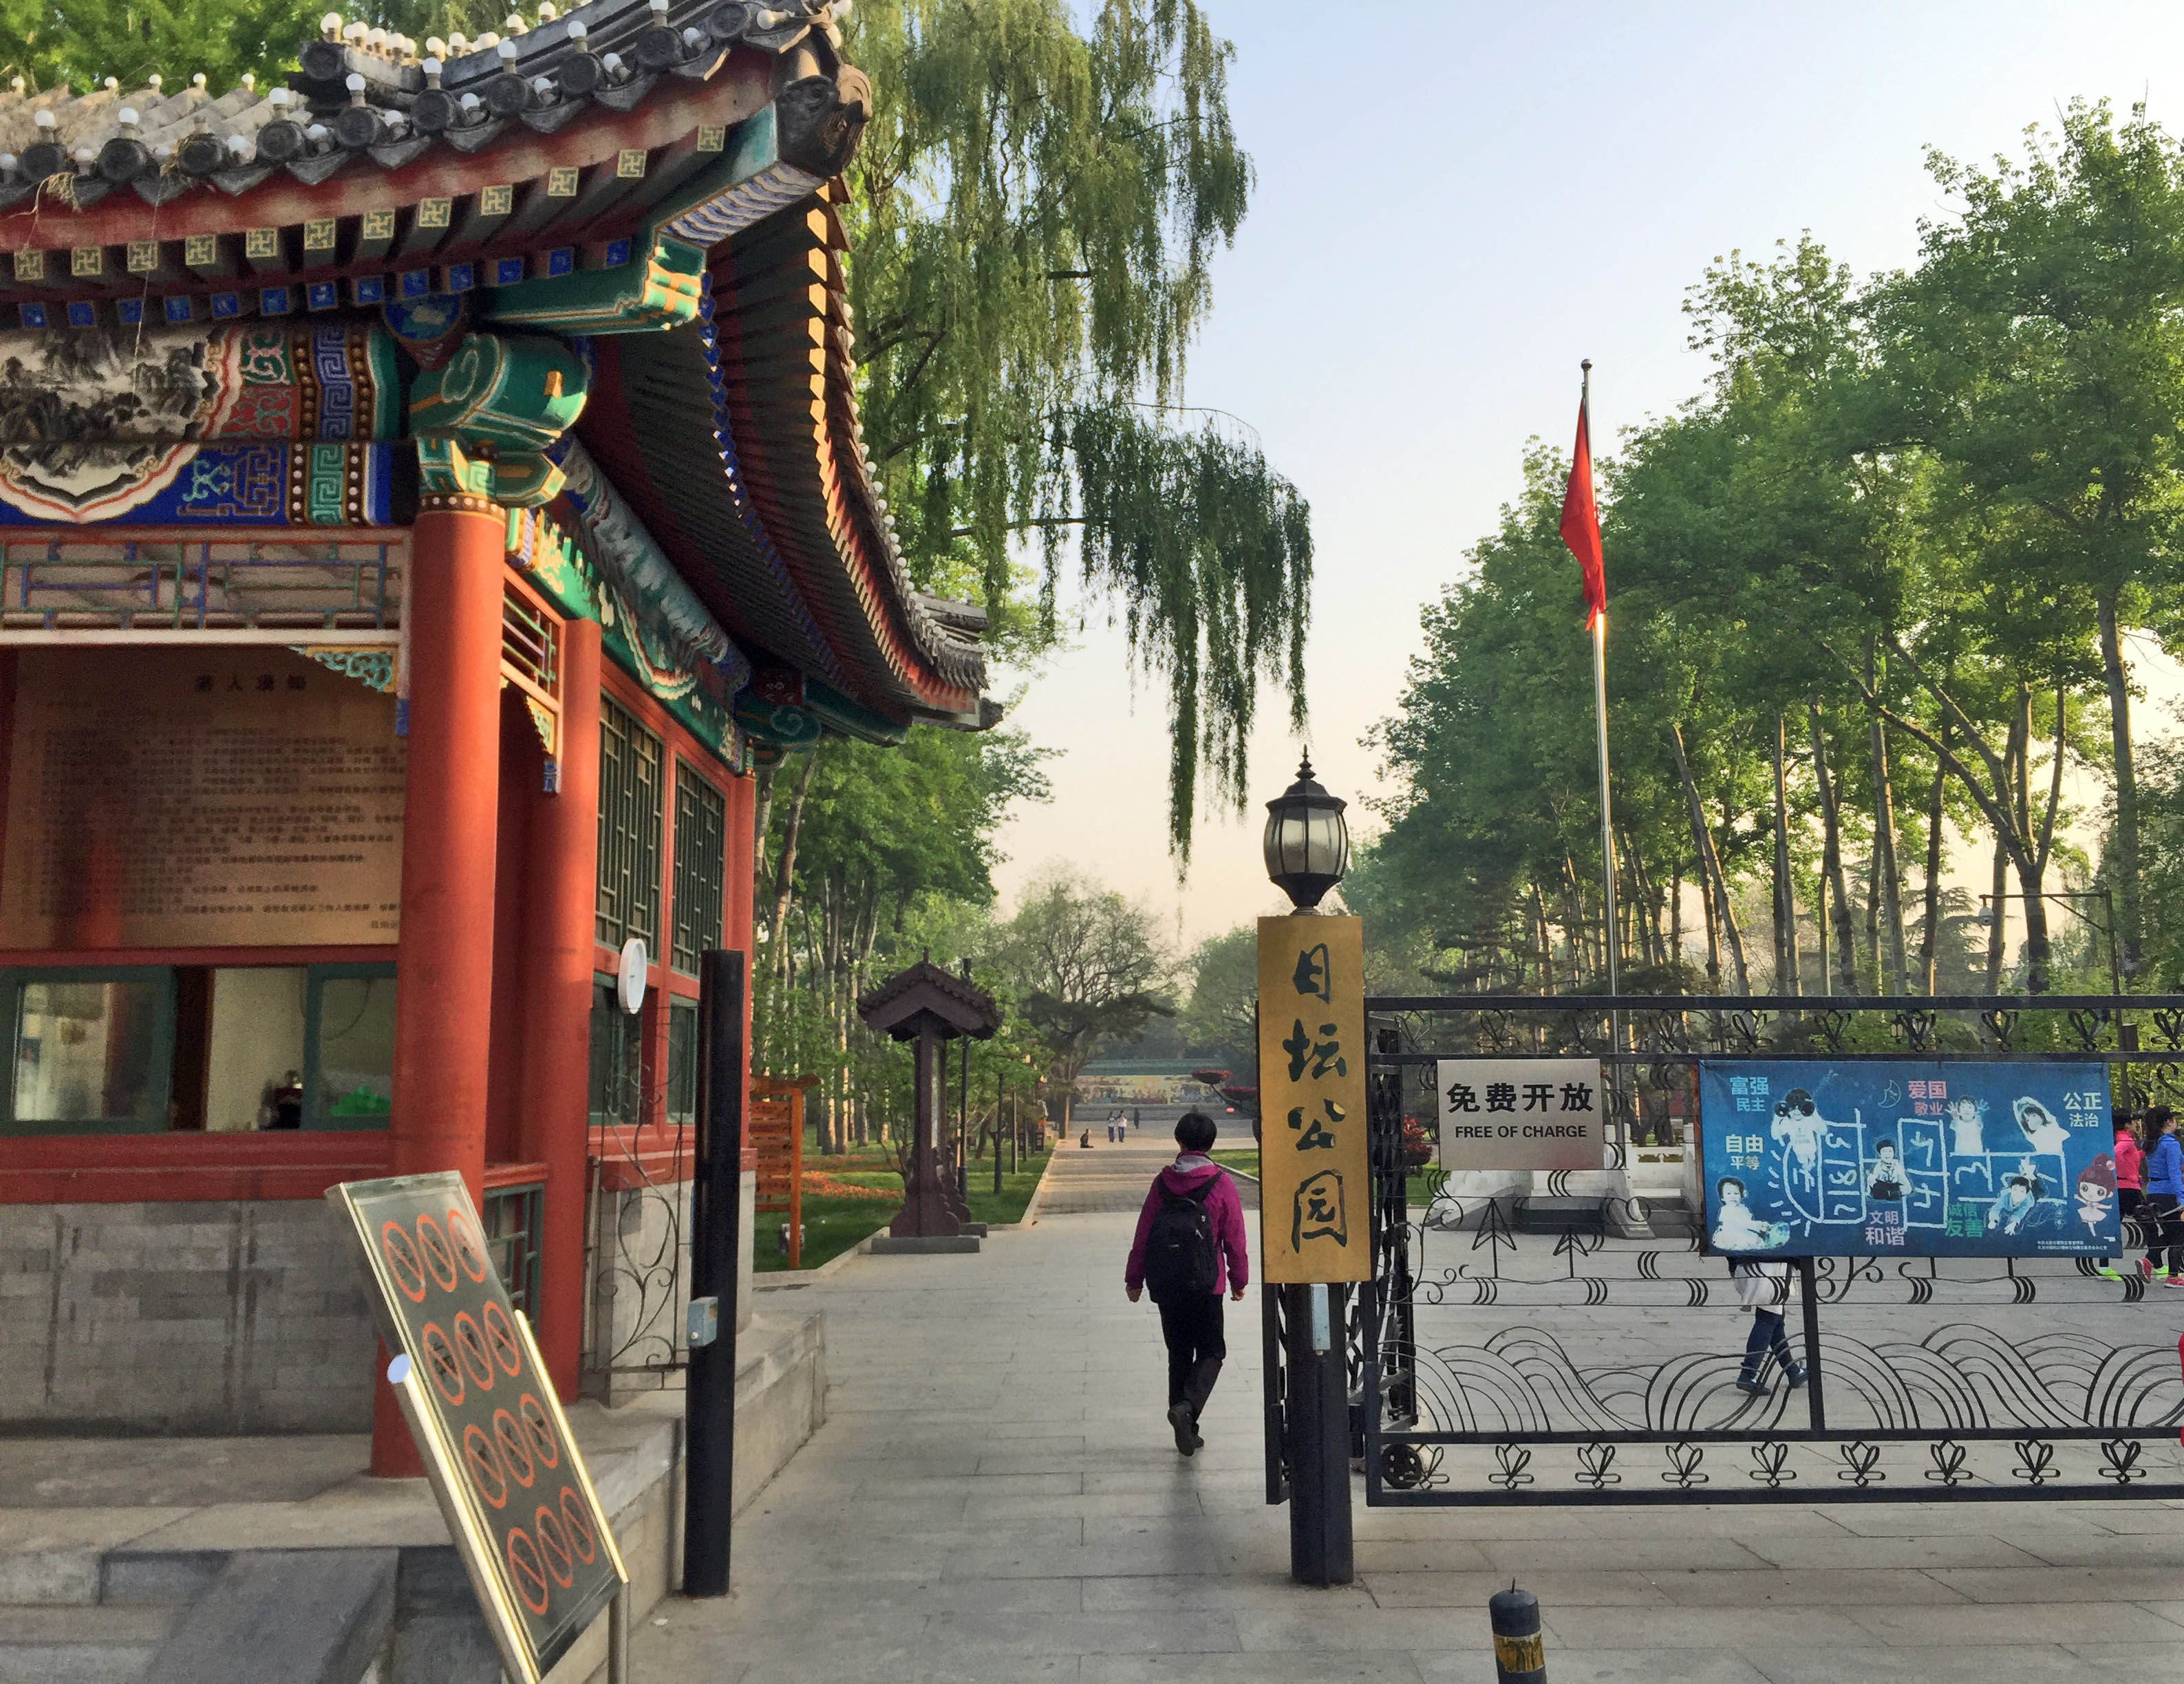 【携程攻略】北京日坛公园景点,大门通道成片草坪和布置的大花坛,有皇